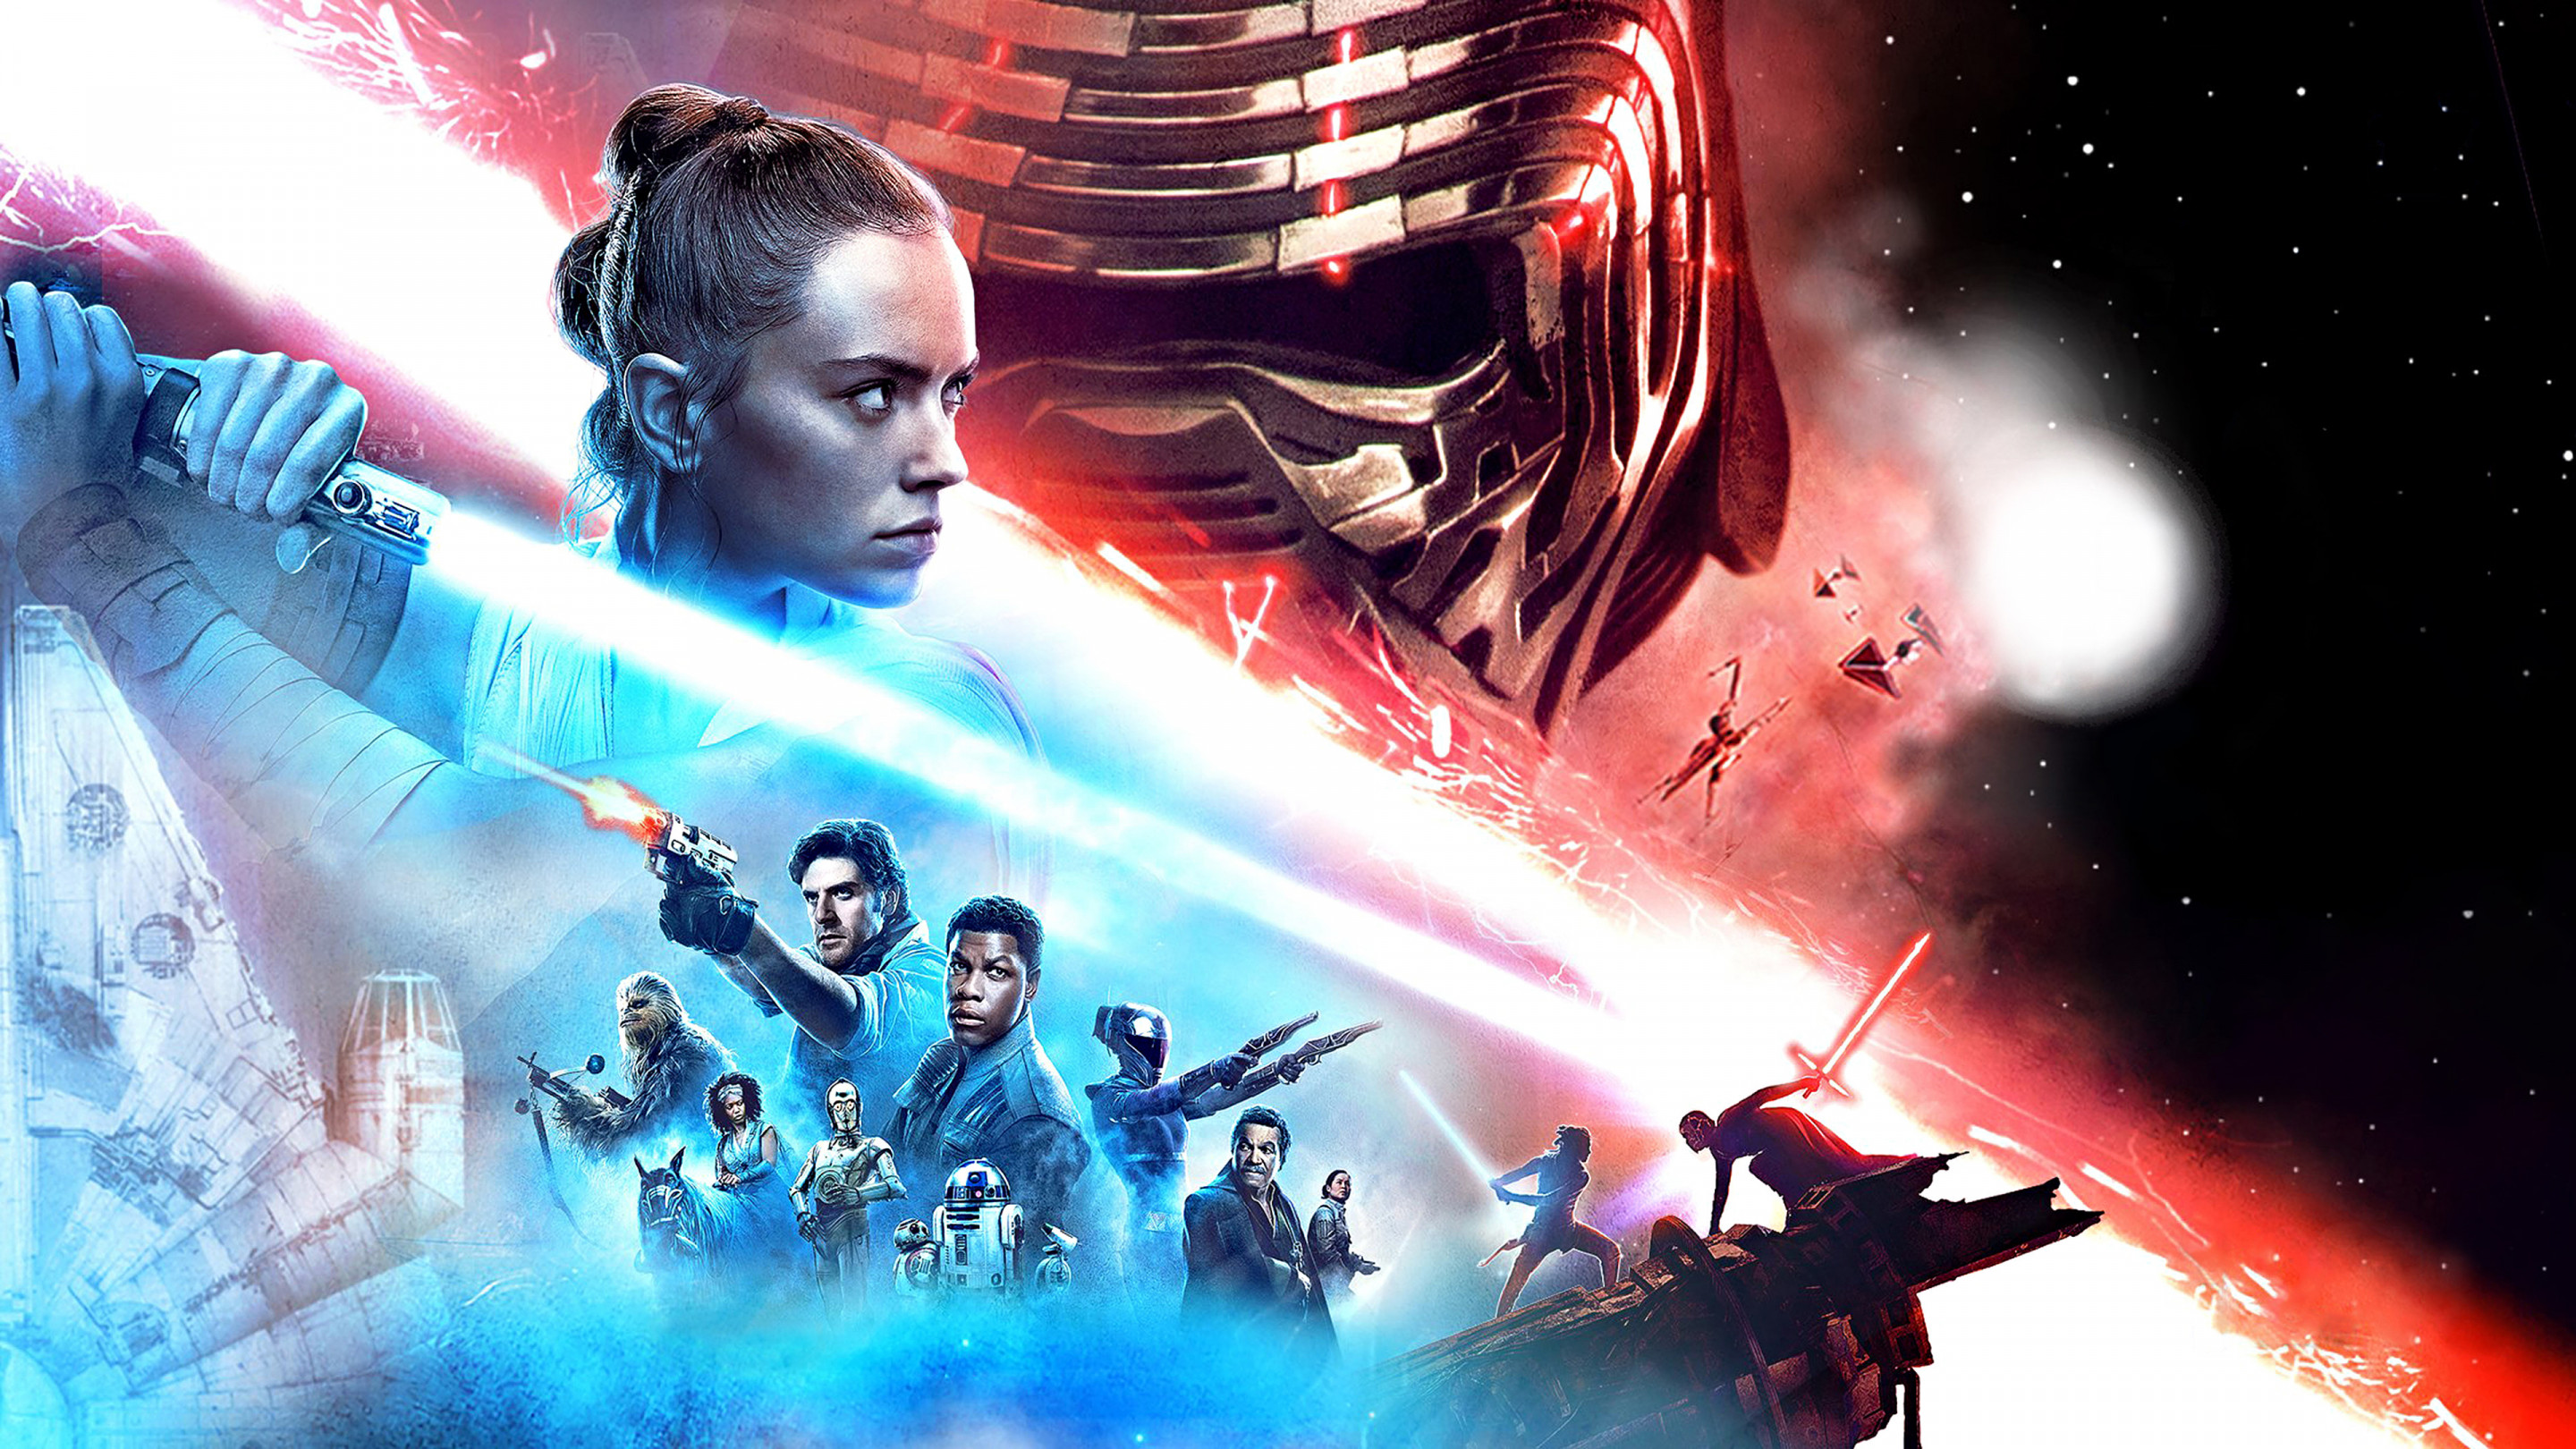 Episode IX Star Wars: The Rise of Skywalker wallpaper 2880x1620